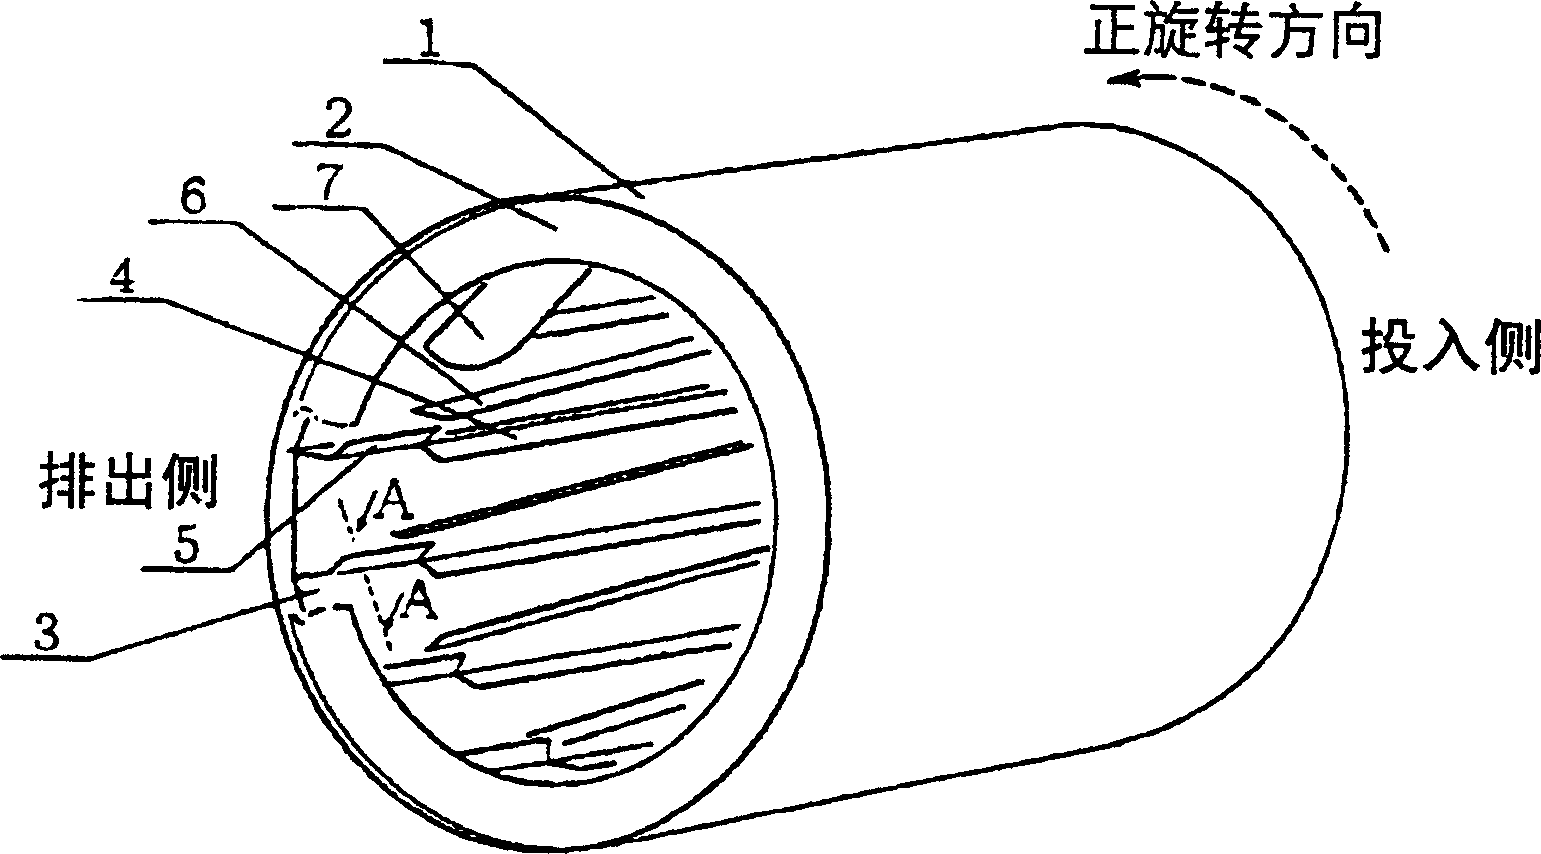 Rotary dryer